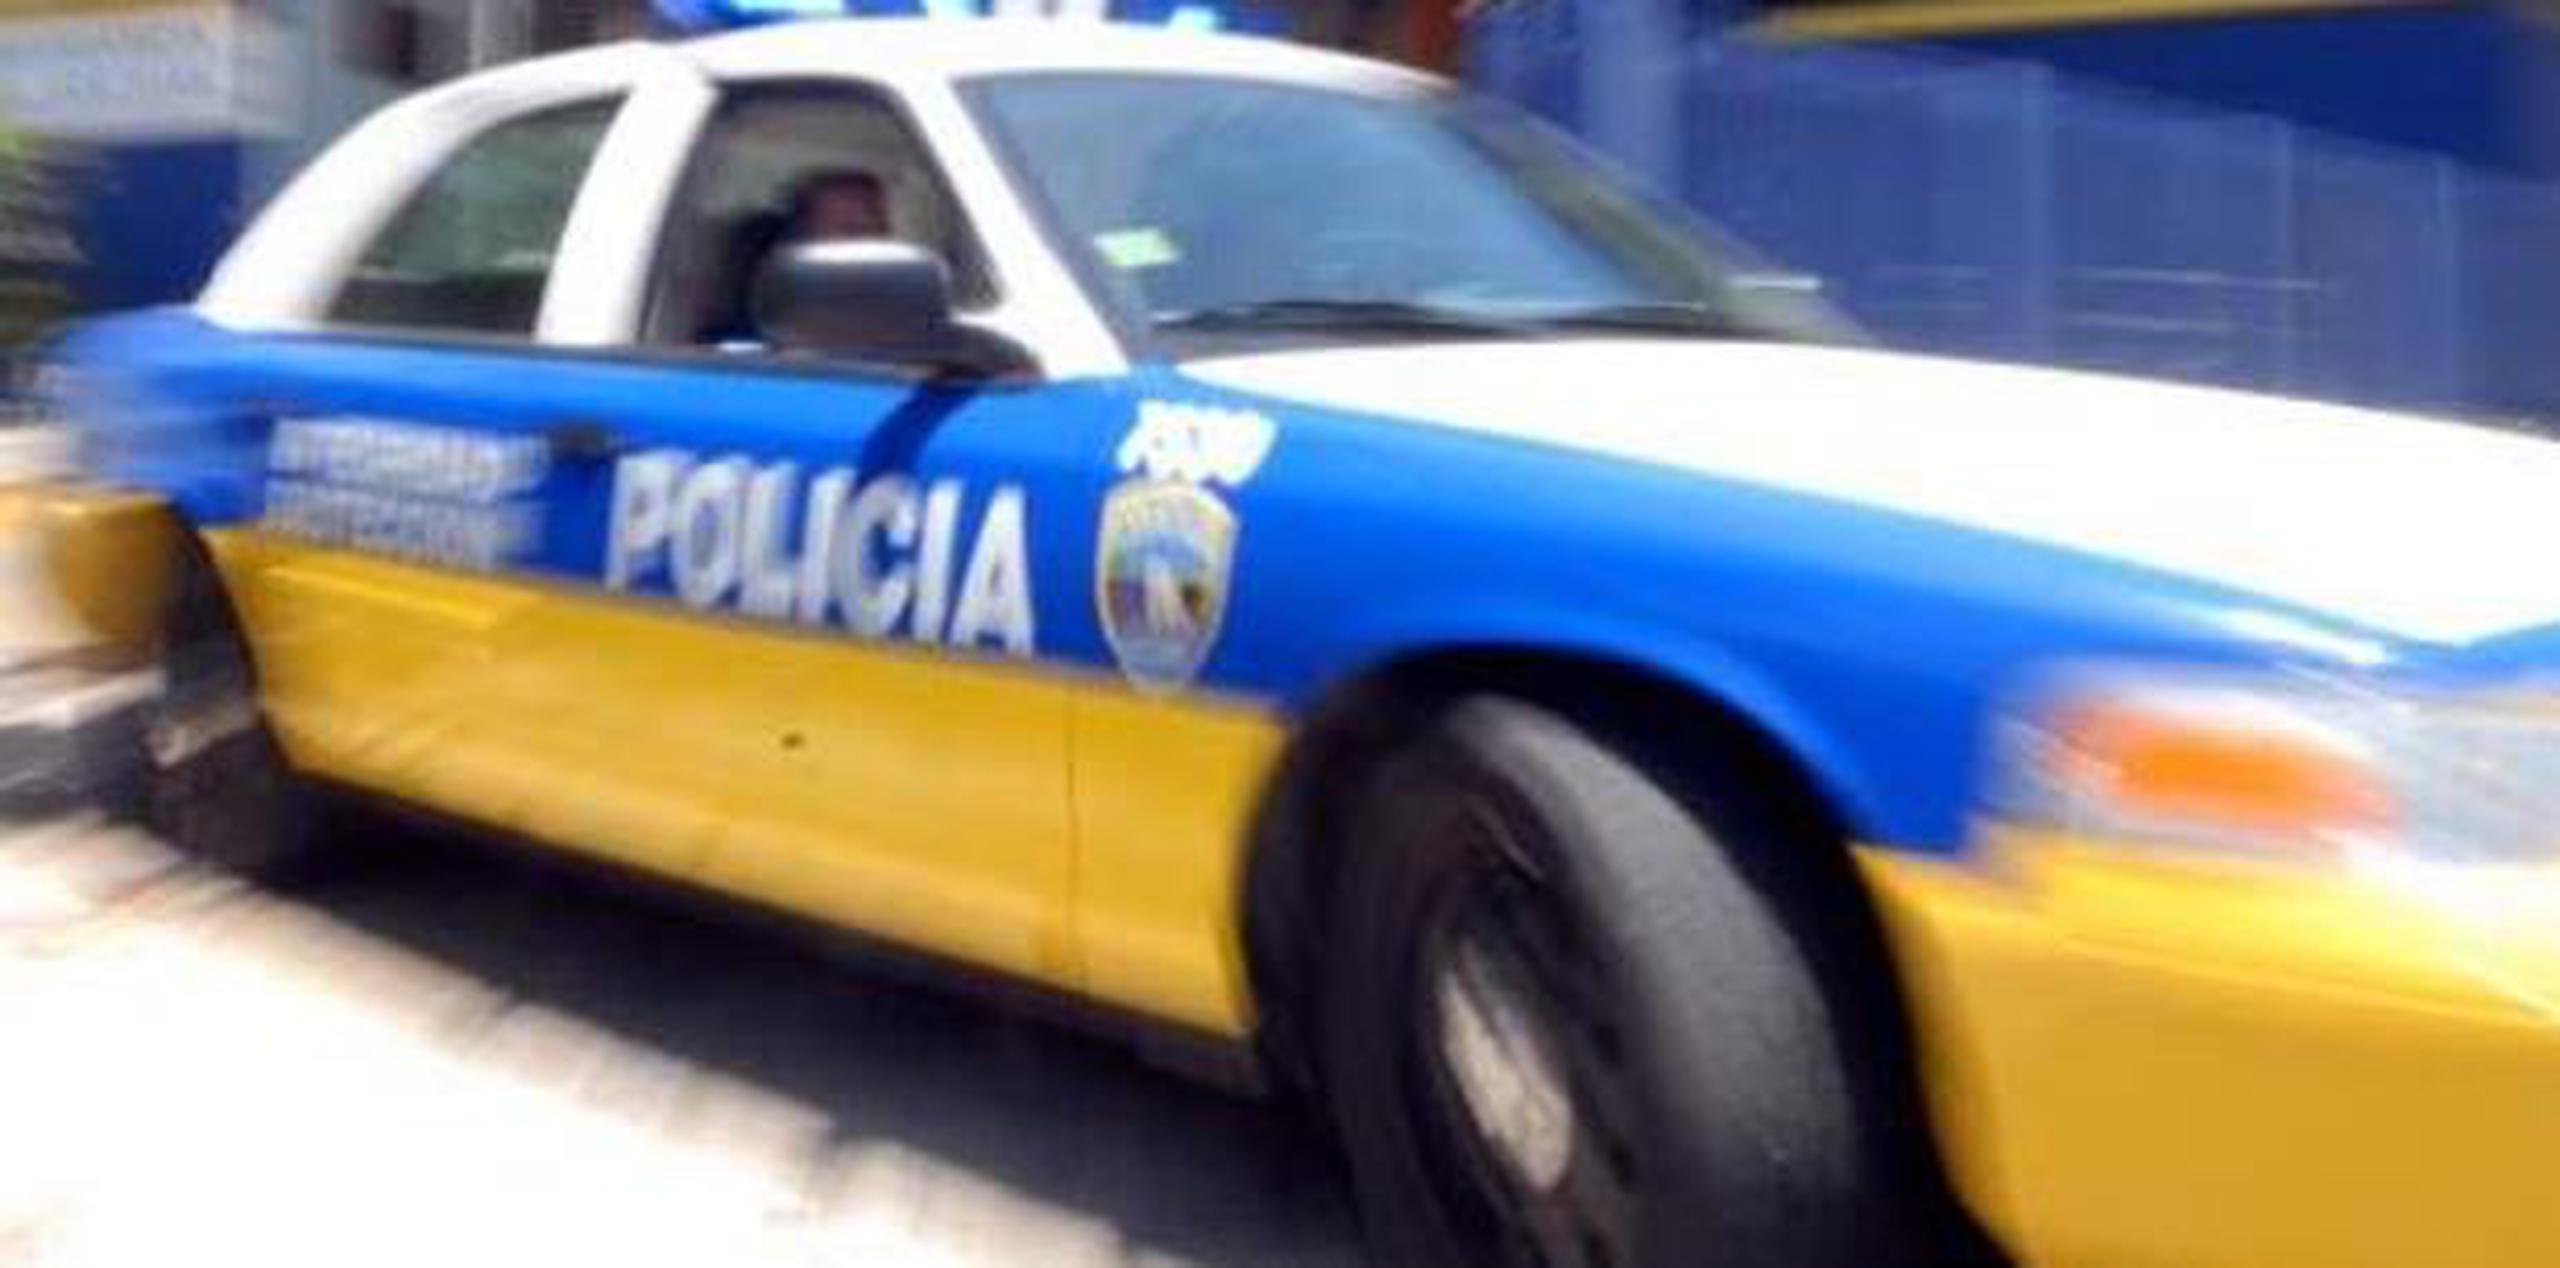 Personal de la División de Patrullas de Carreteras de San Juan junto al fiscal de turno investigan el accidente fatal. (archivo)

